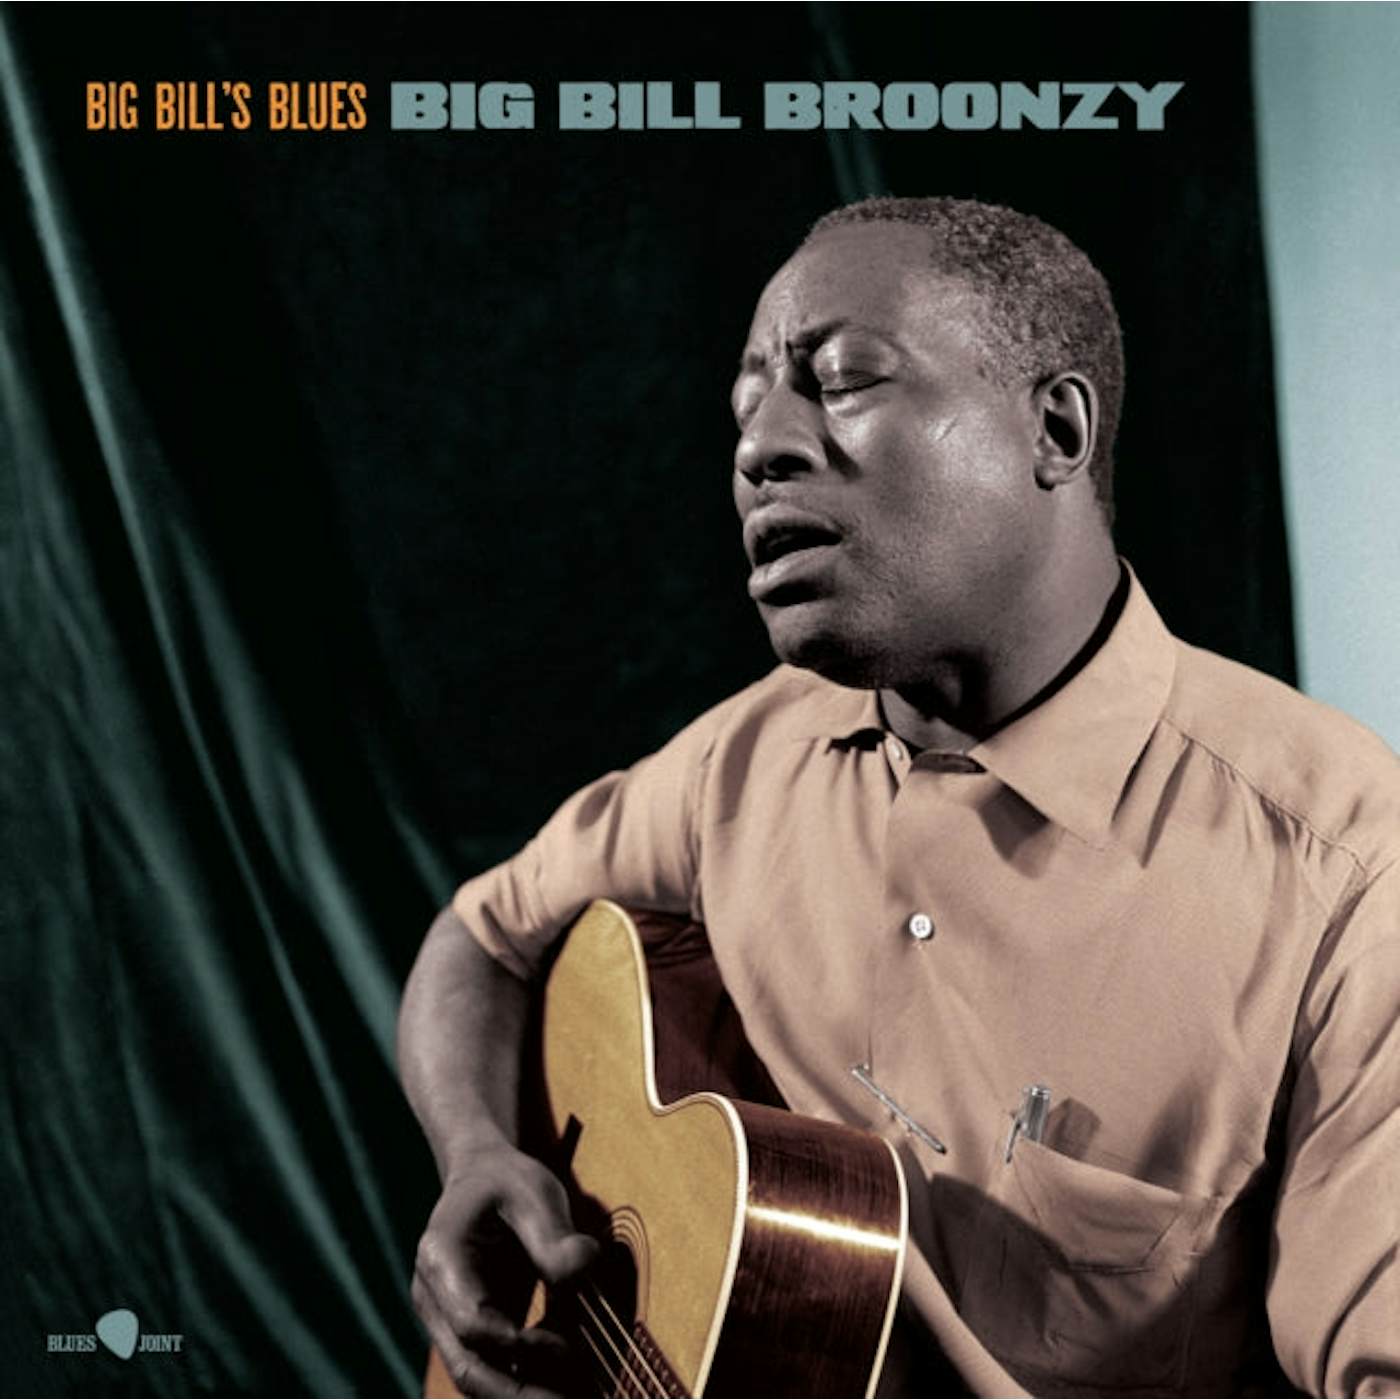 Big Bill Broonzy LP - Big Bills Blues (Vinyl)